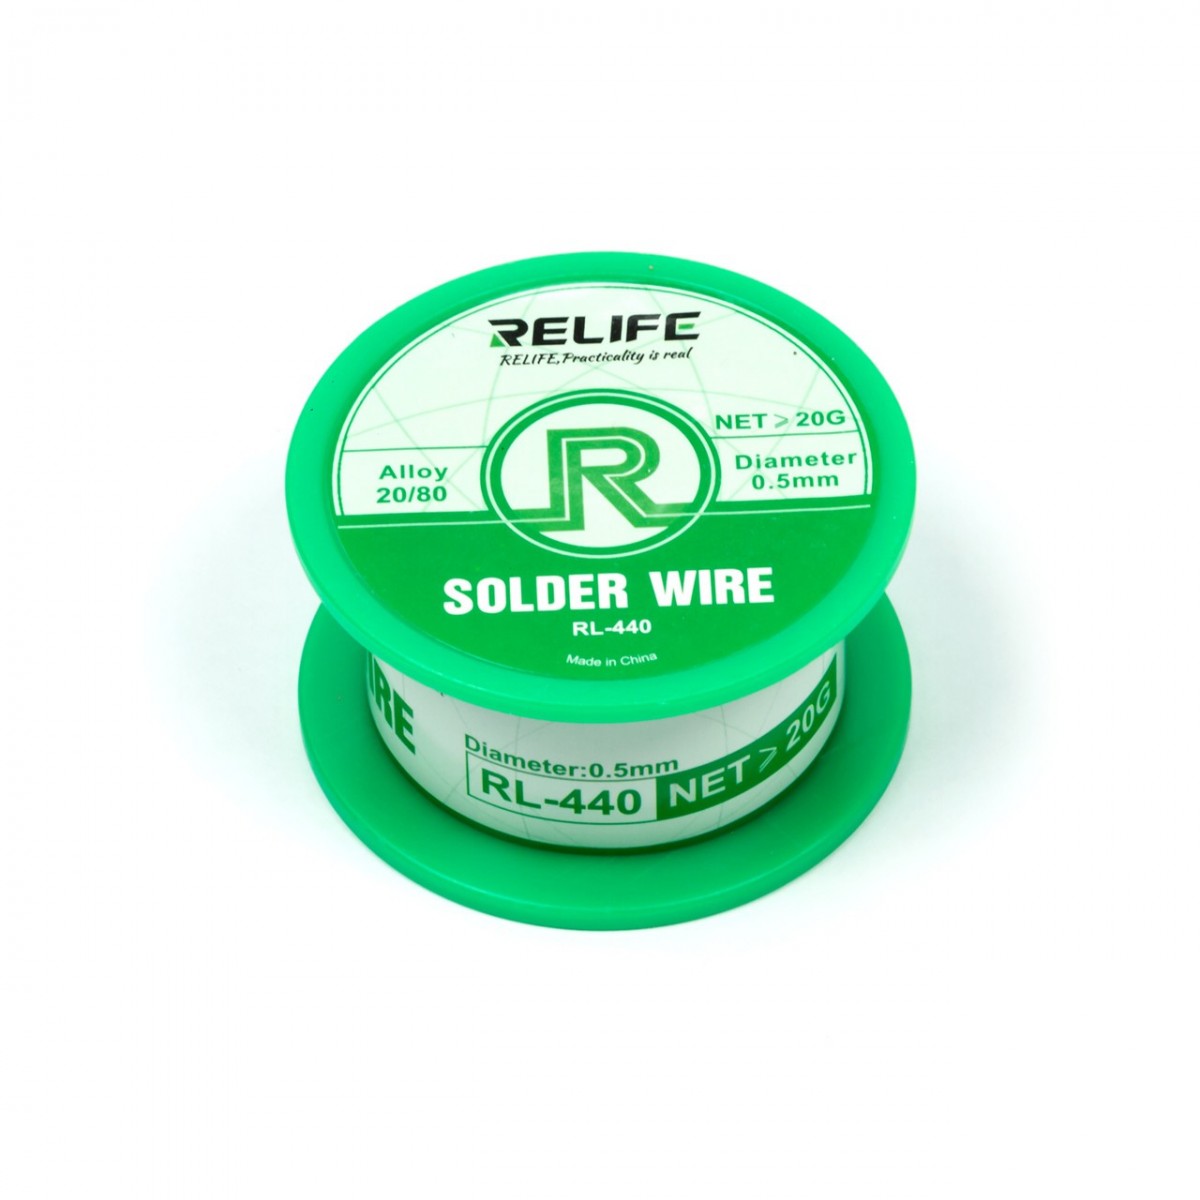 سیم لحیم ریلایف 0.3 میلیمتر 20 گرم RELIFE RL-440